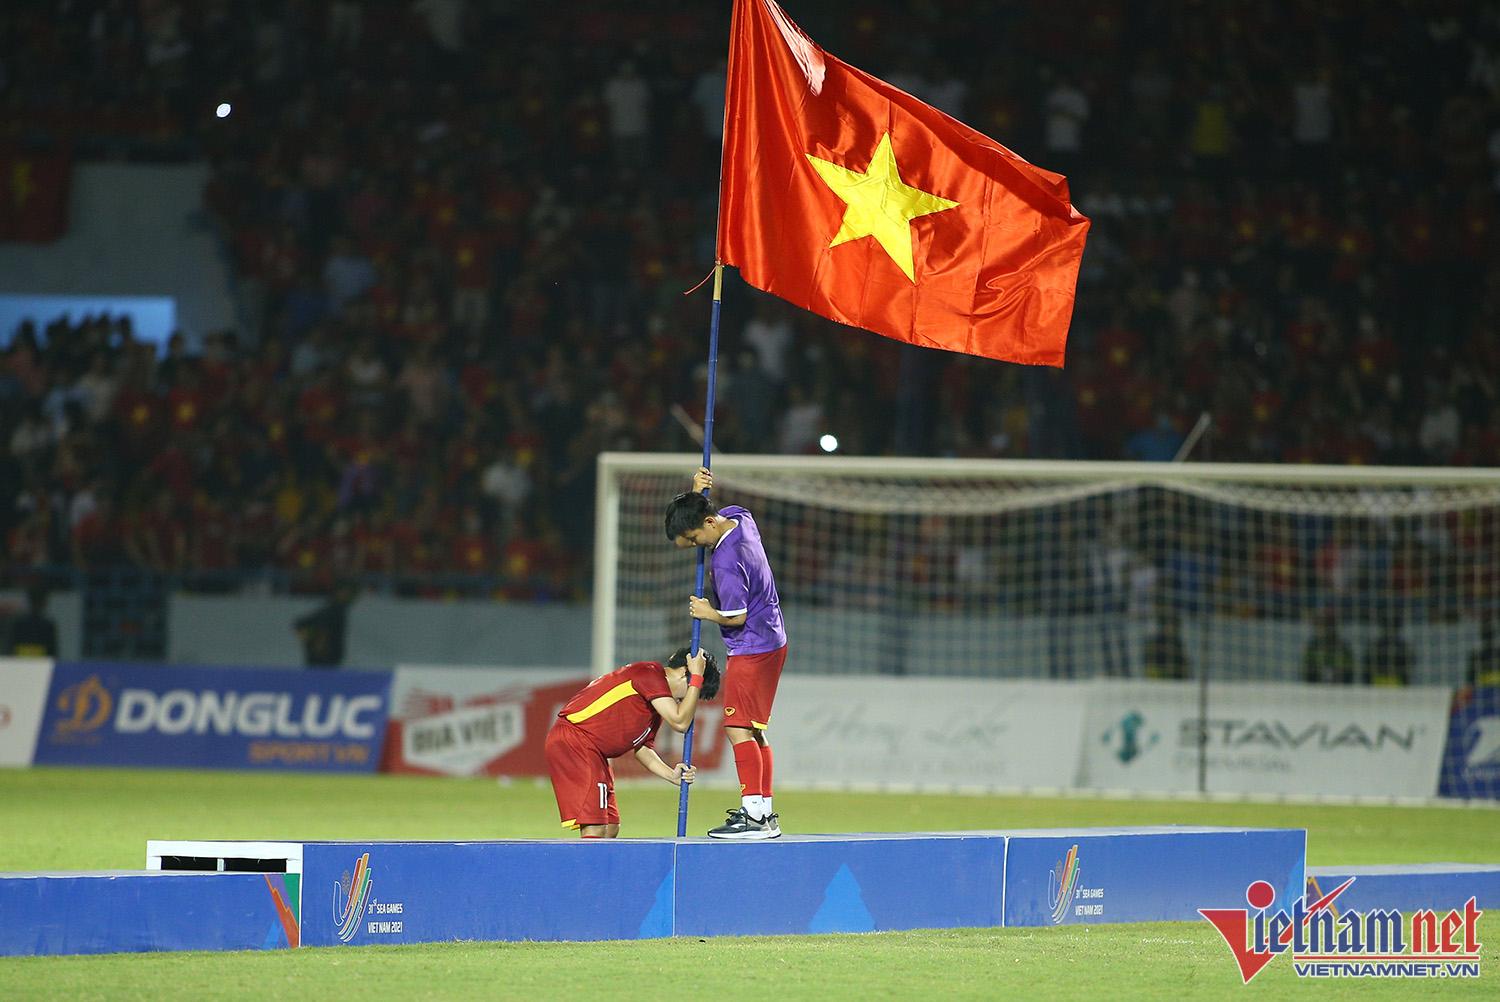 Xúc động hình ảnh cầu thủ nữ Việt Nam cắm cờ Tổ quốc trên bục nhận huy chương - Ảnh 9.